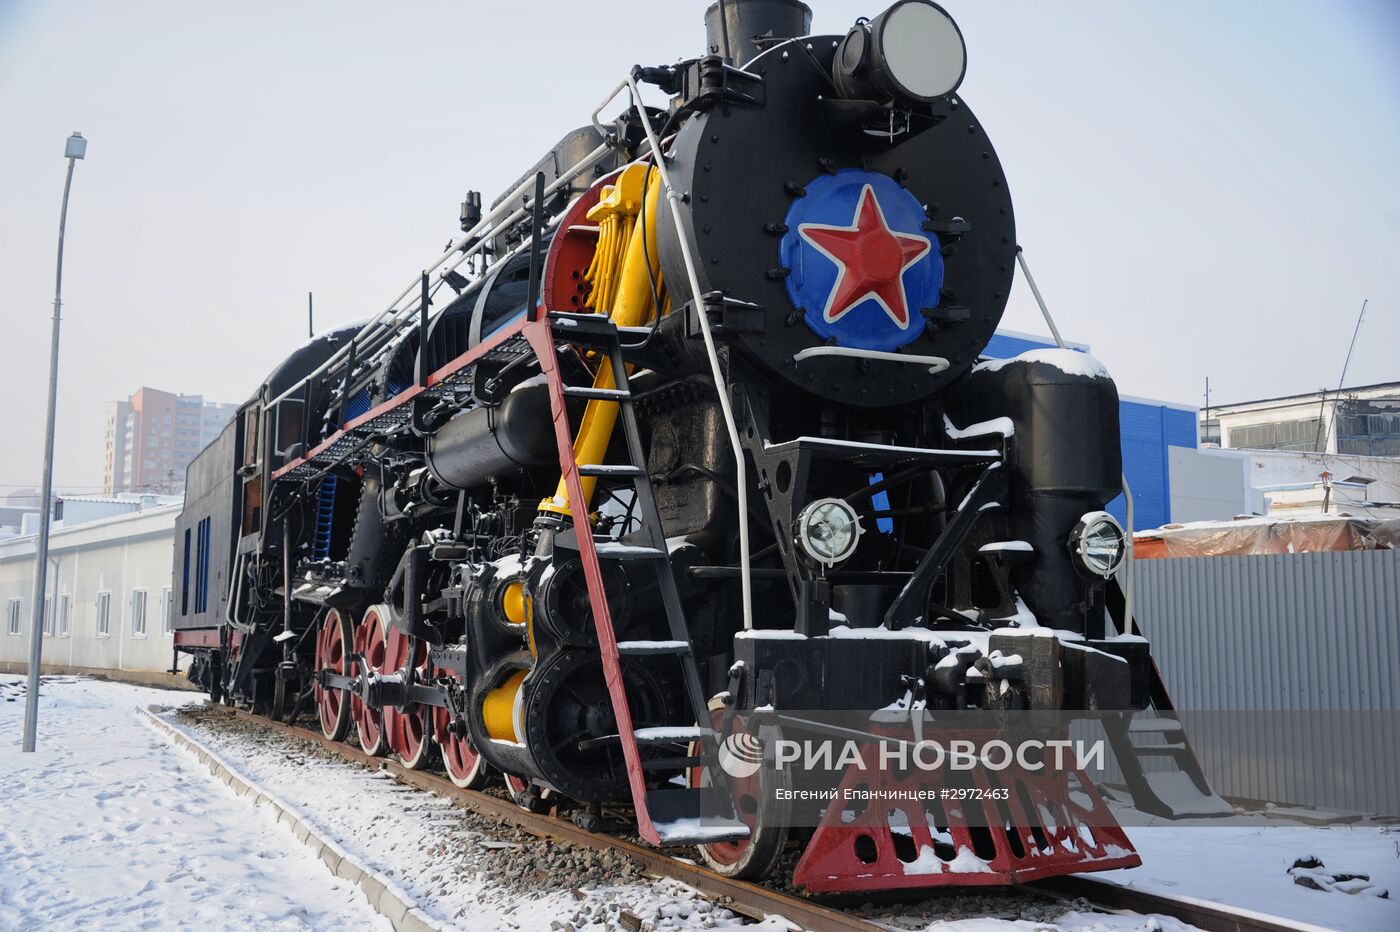 Забайкальская железная дорога. 100-летие Транссибирской магистрали